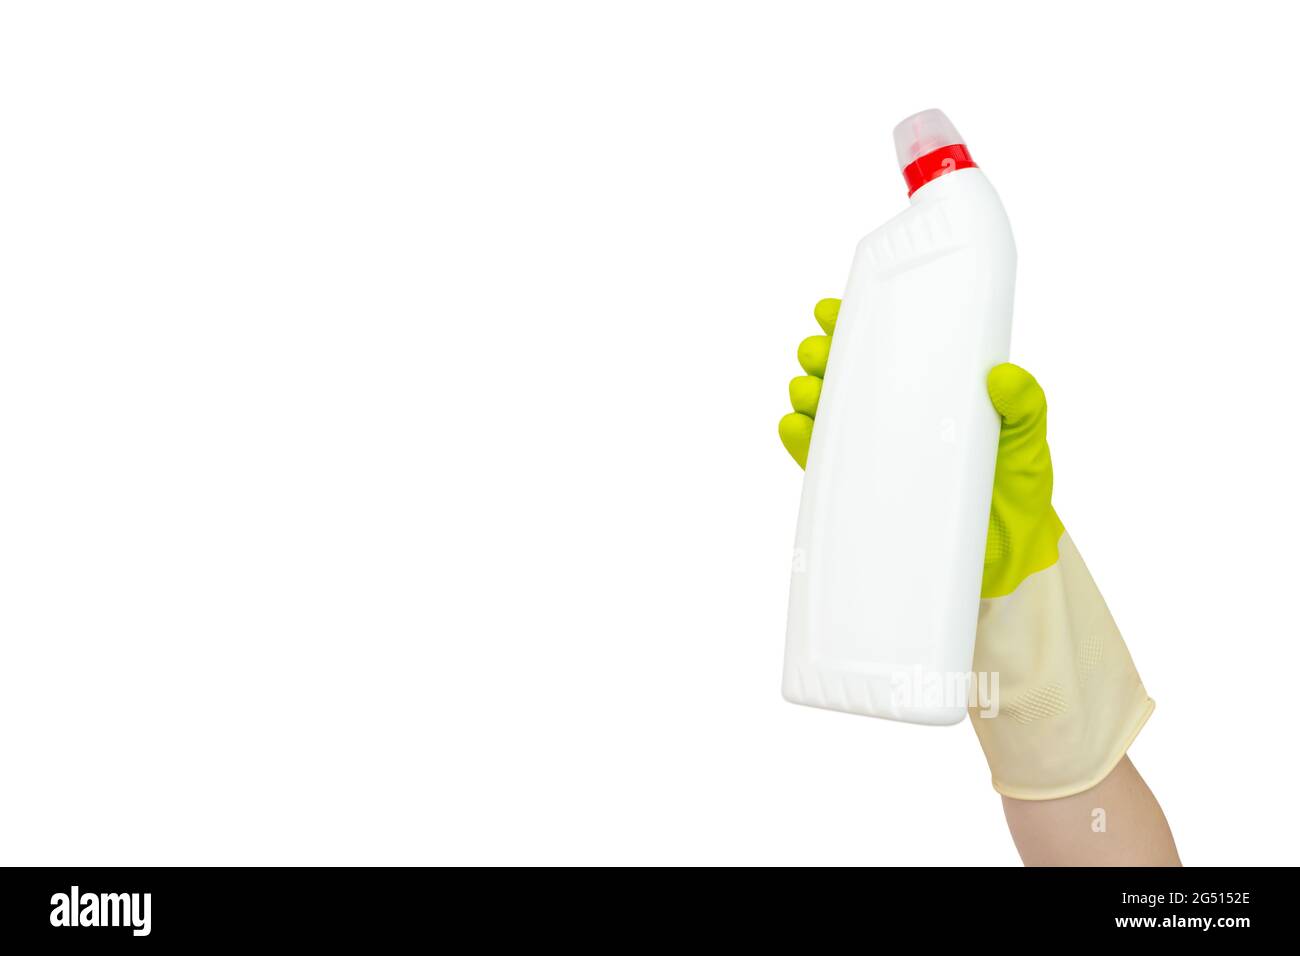 Concept de nettoyage de ressort. Vue de dessus de la main dans des gants en caoutchouc jaune tenant une bouteille blanche avec un détergent liquide. Concept de fournitures de nettoyage. Désinfection Banque D'Images